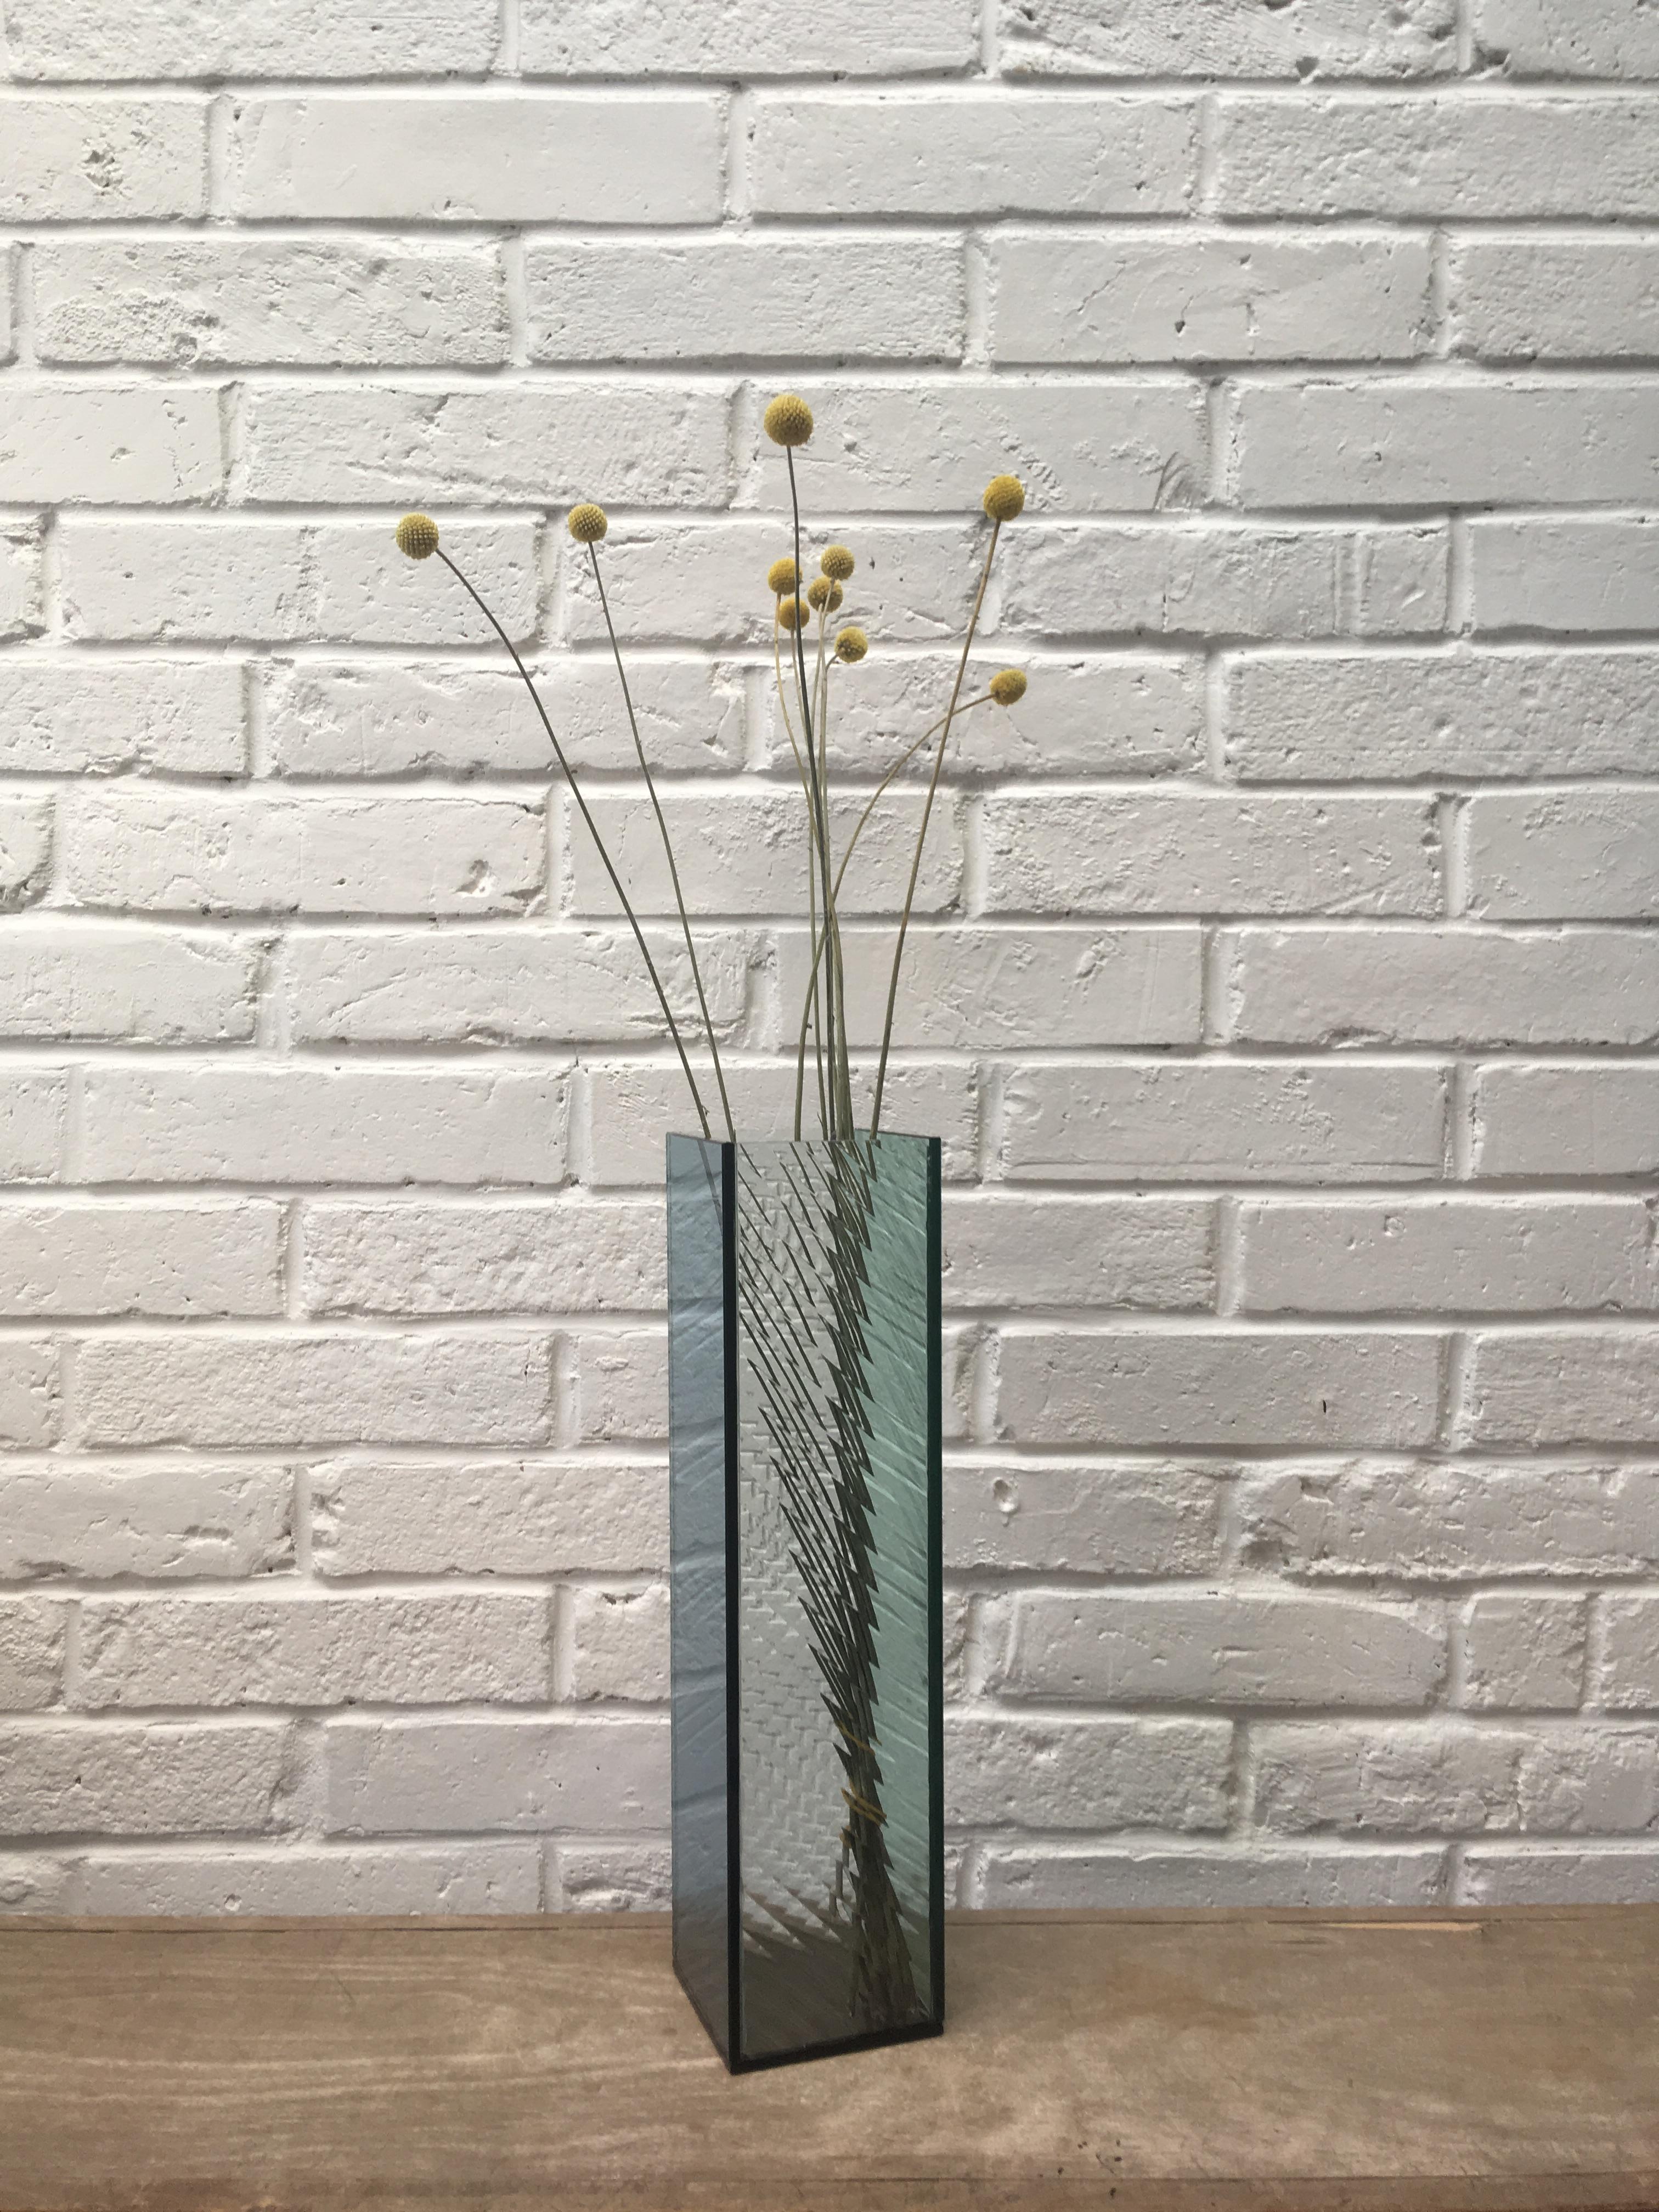 Vase à pannes unique de Kim Thome
Dimensions : Sur mesure
Matériaux : Verre, résine époxy

Kim Thomé est un designer norvégien basé à Londres.